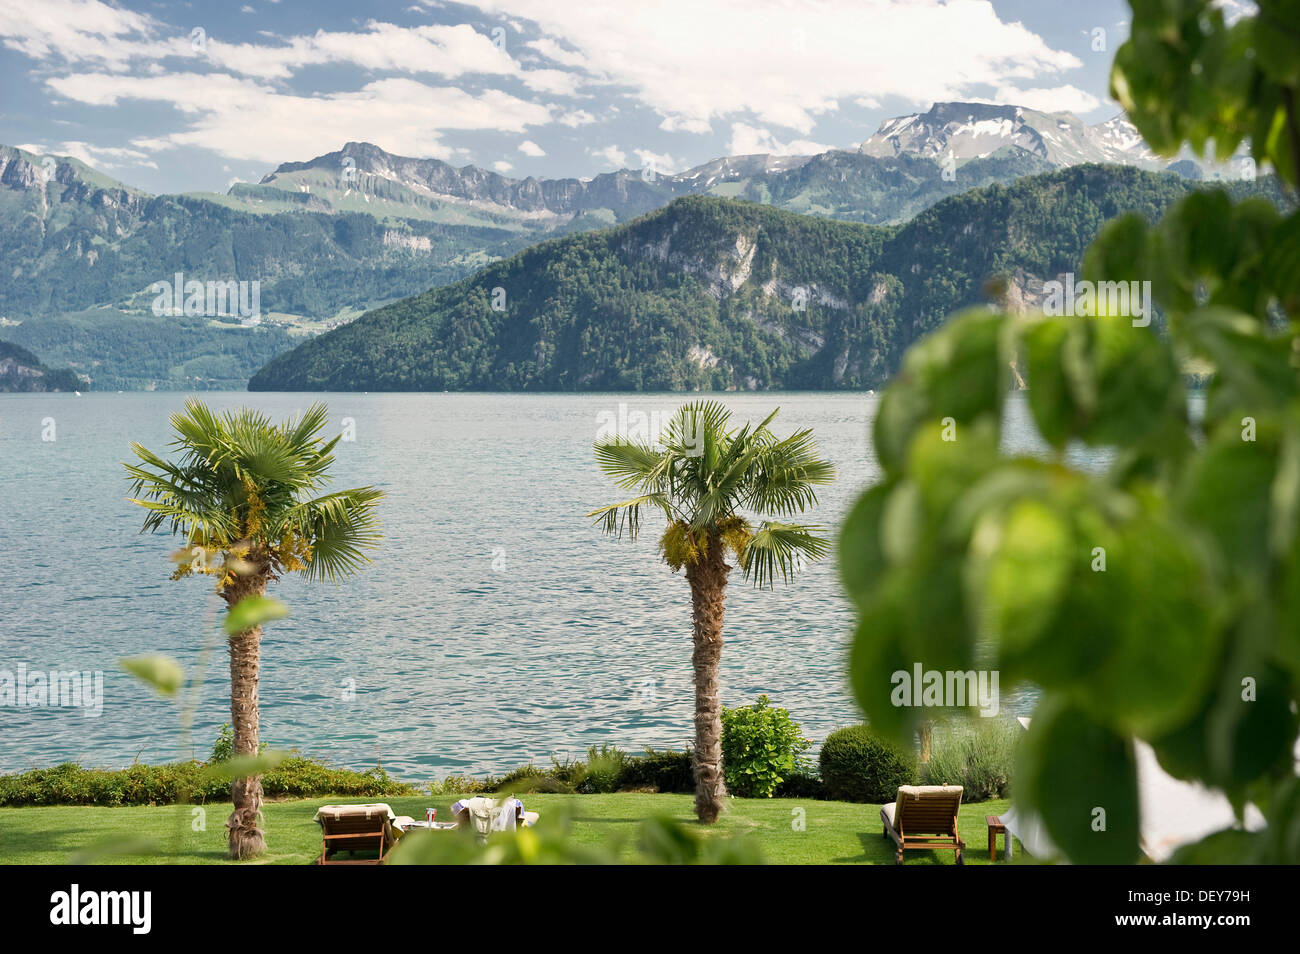 Palmen in Weggis, Vierwaldstättersee, Luzern, Schweiz, Europa  Stockfotografie - Alamy